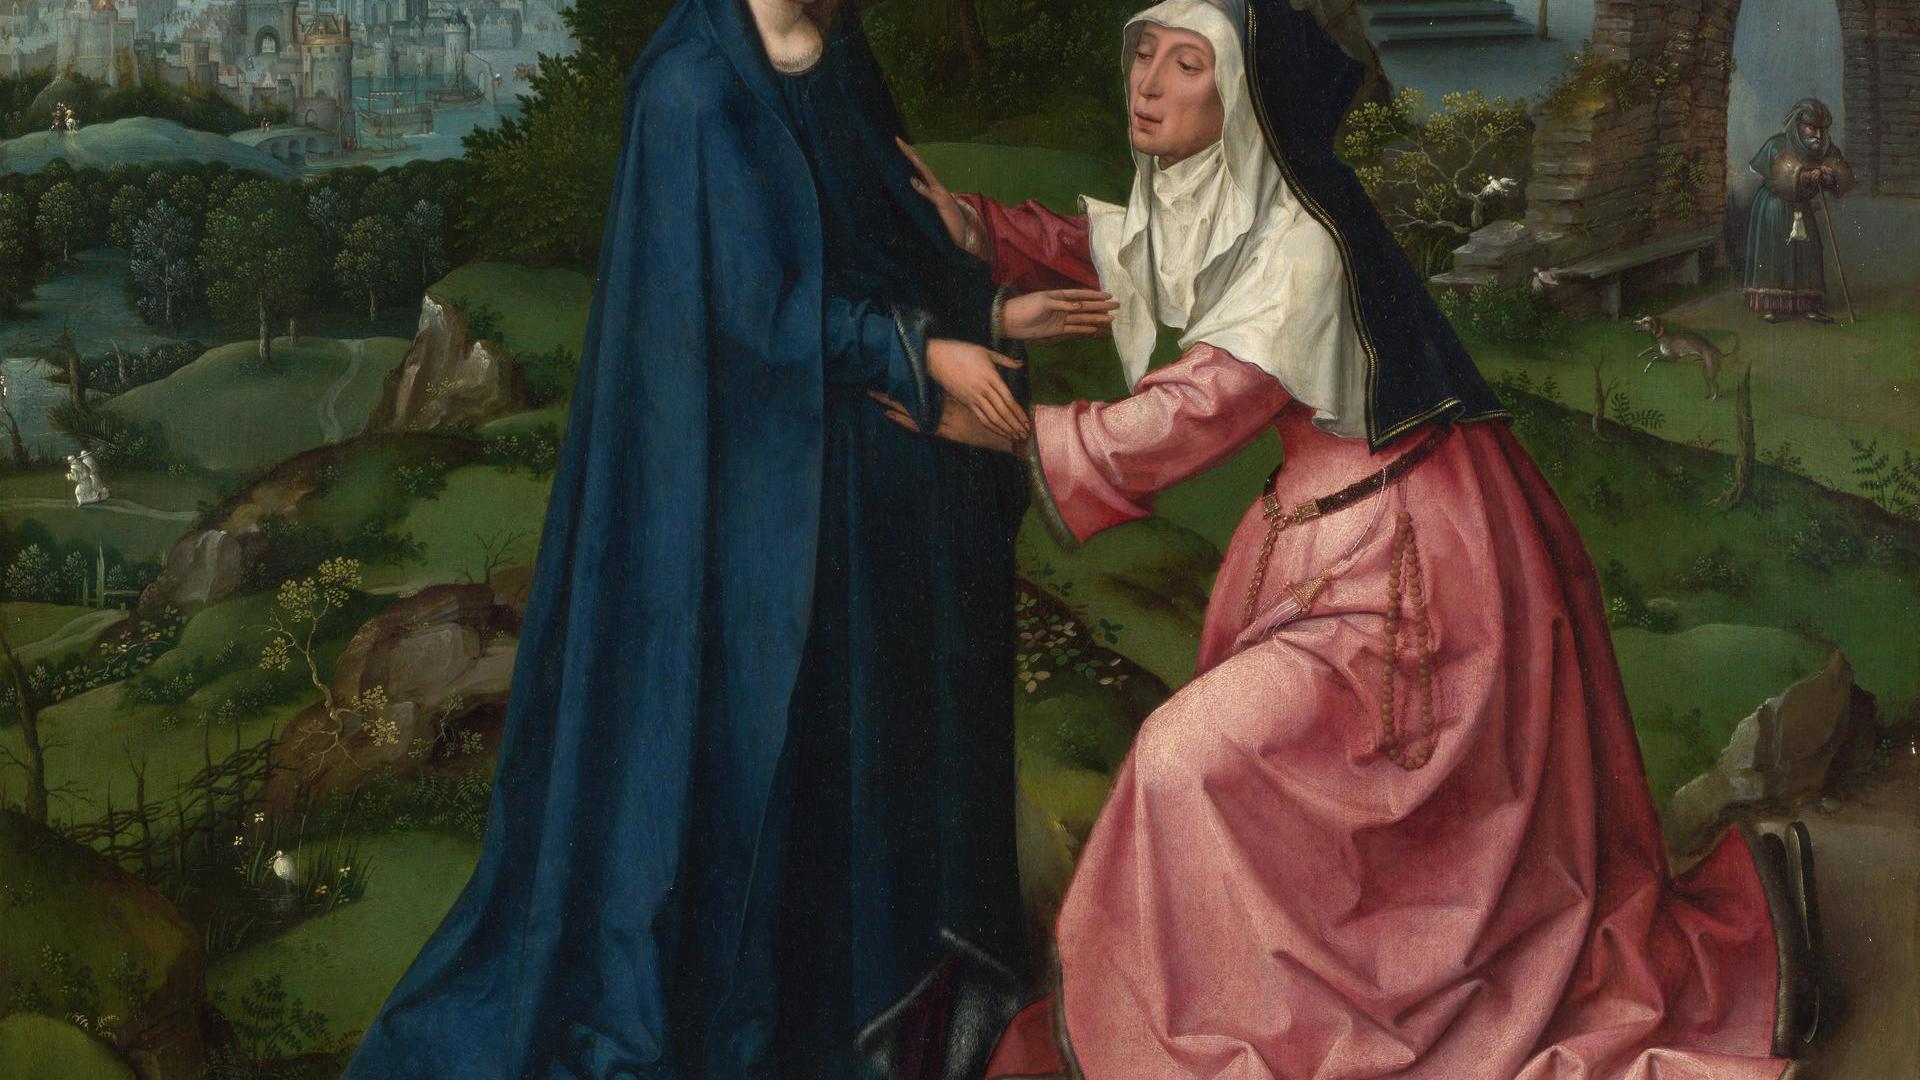 The Visitation of the Virgin to Saint Elizabeth by Workshop of Goossen van der Weyden